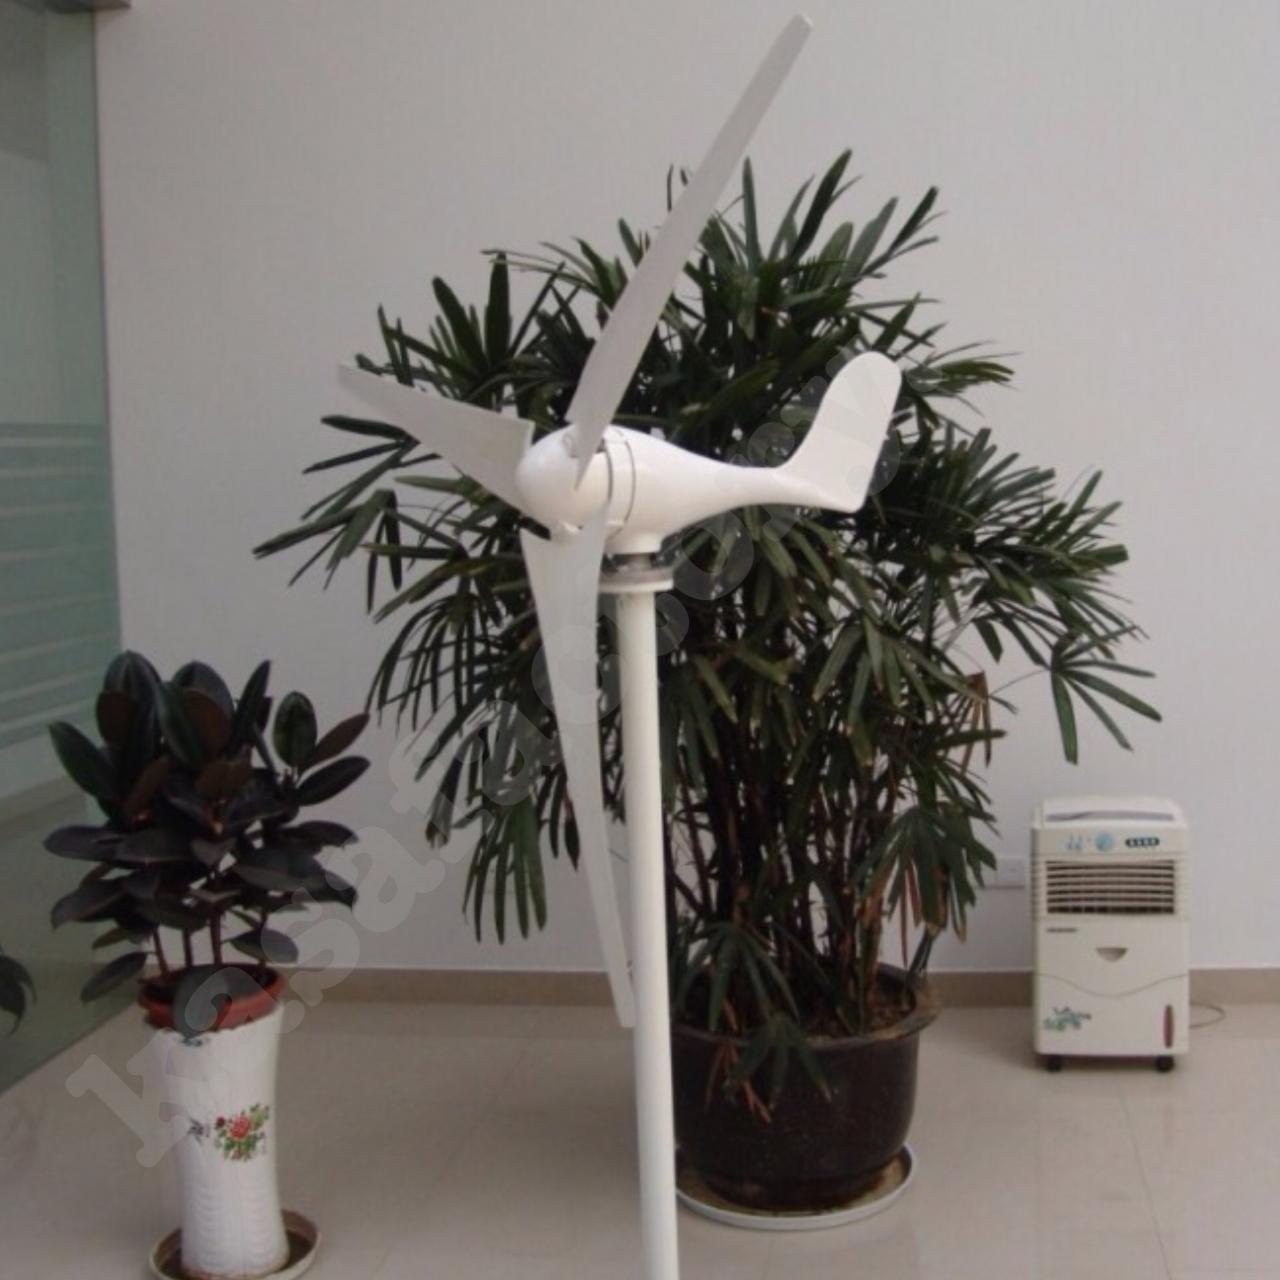 300W 24V Wind Turbine Generator 3 Blade - Digital Hybrid Wind/Solar Controller